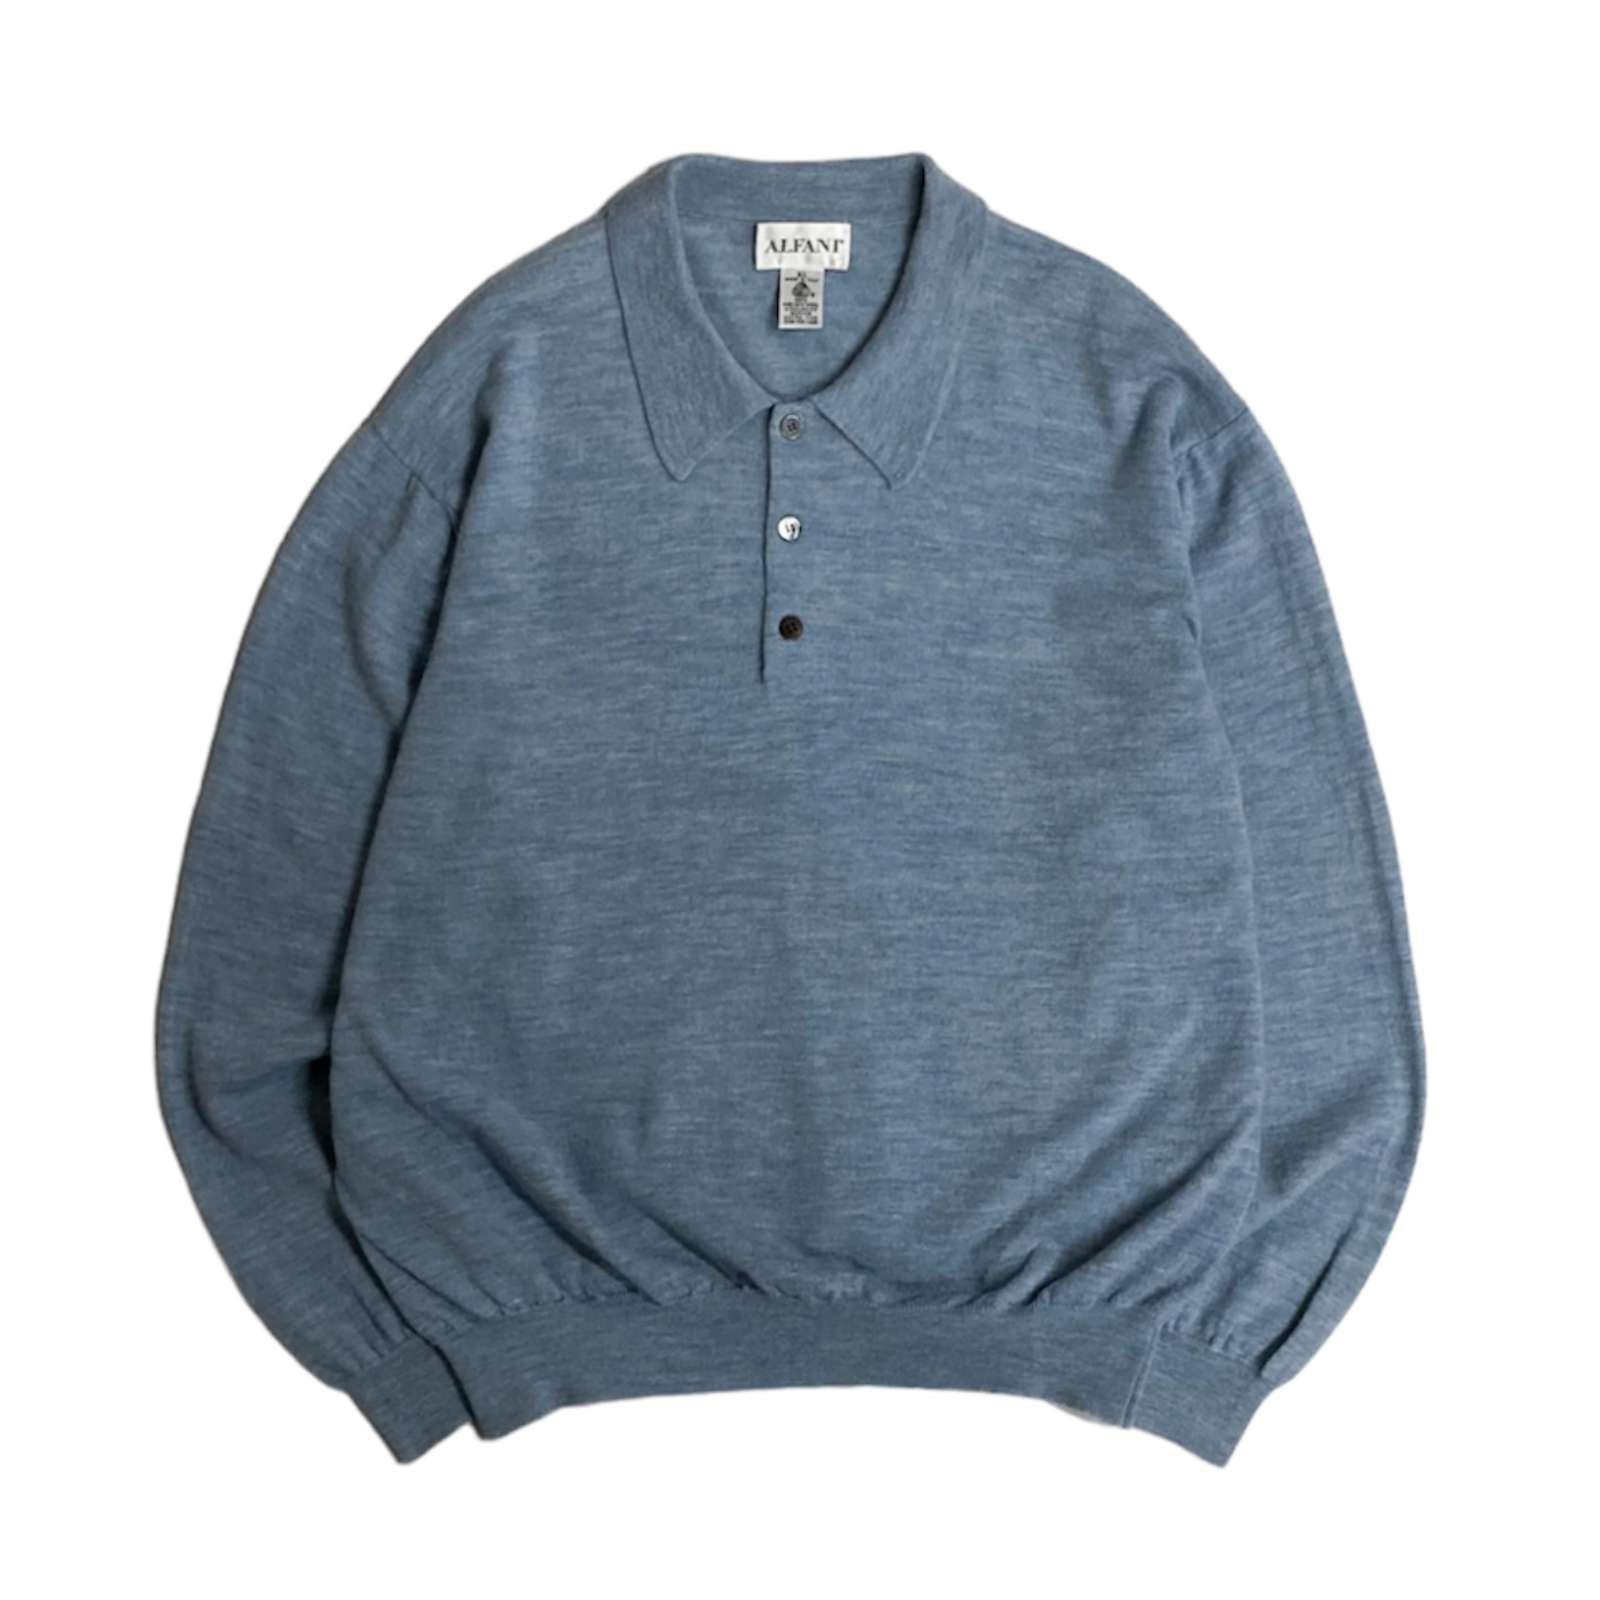 90s ニットポロシャツ セーター メリノウール100% イタリア製 - ニット